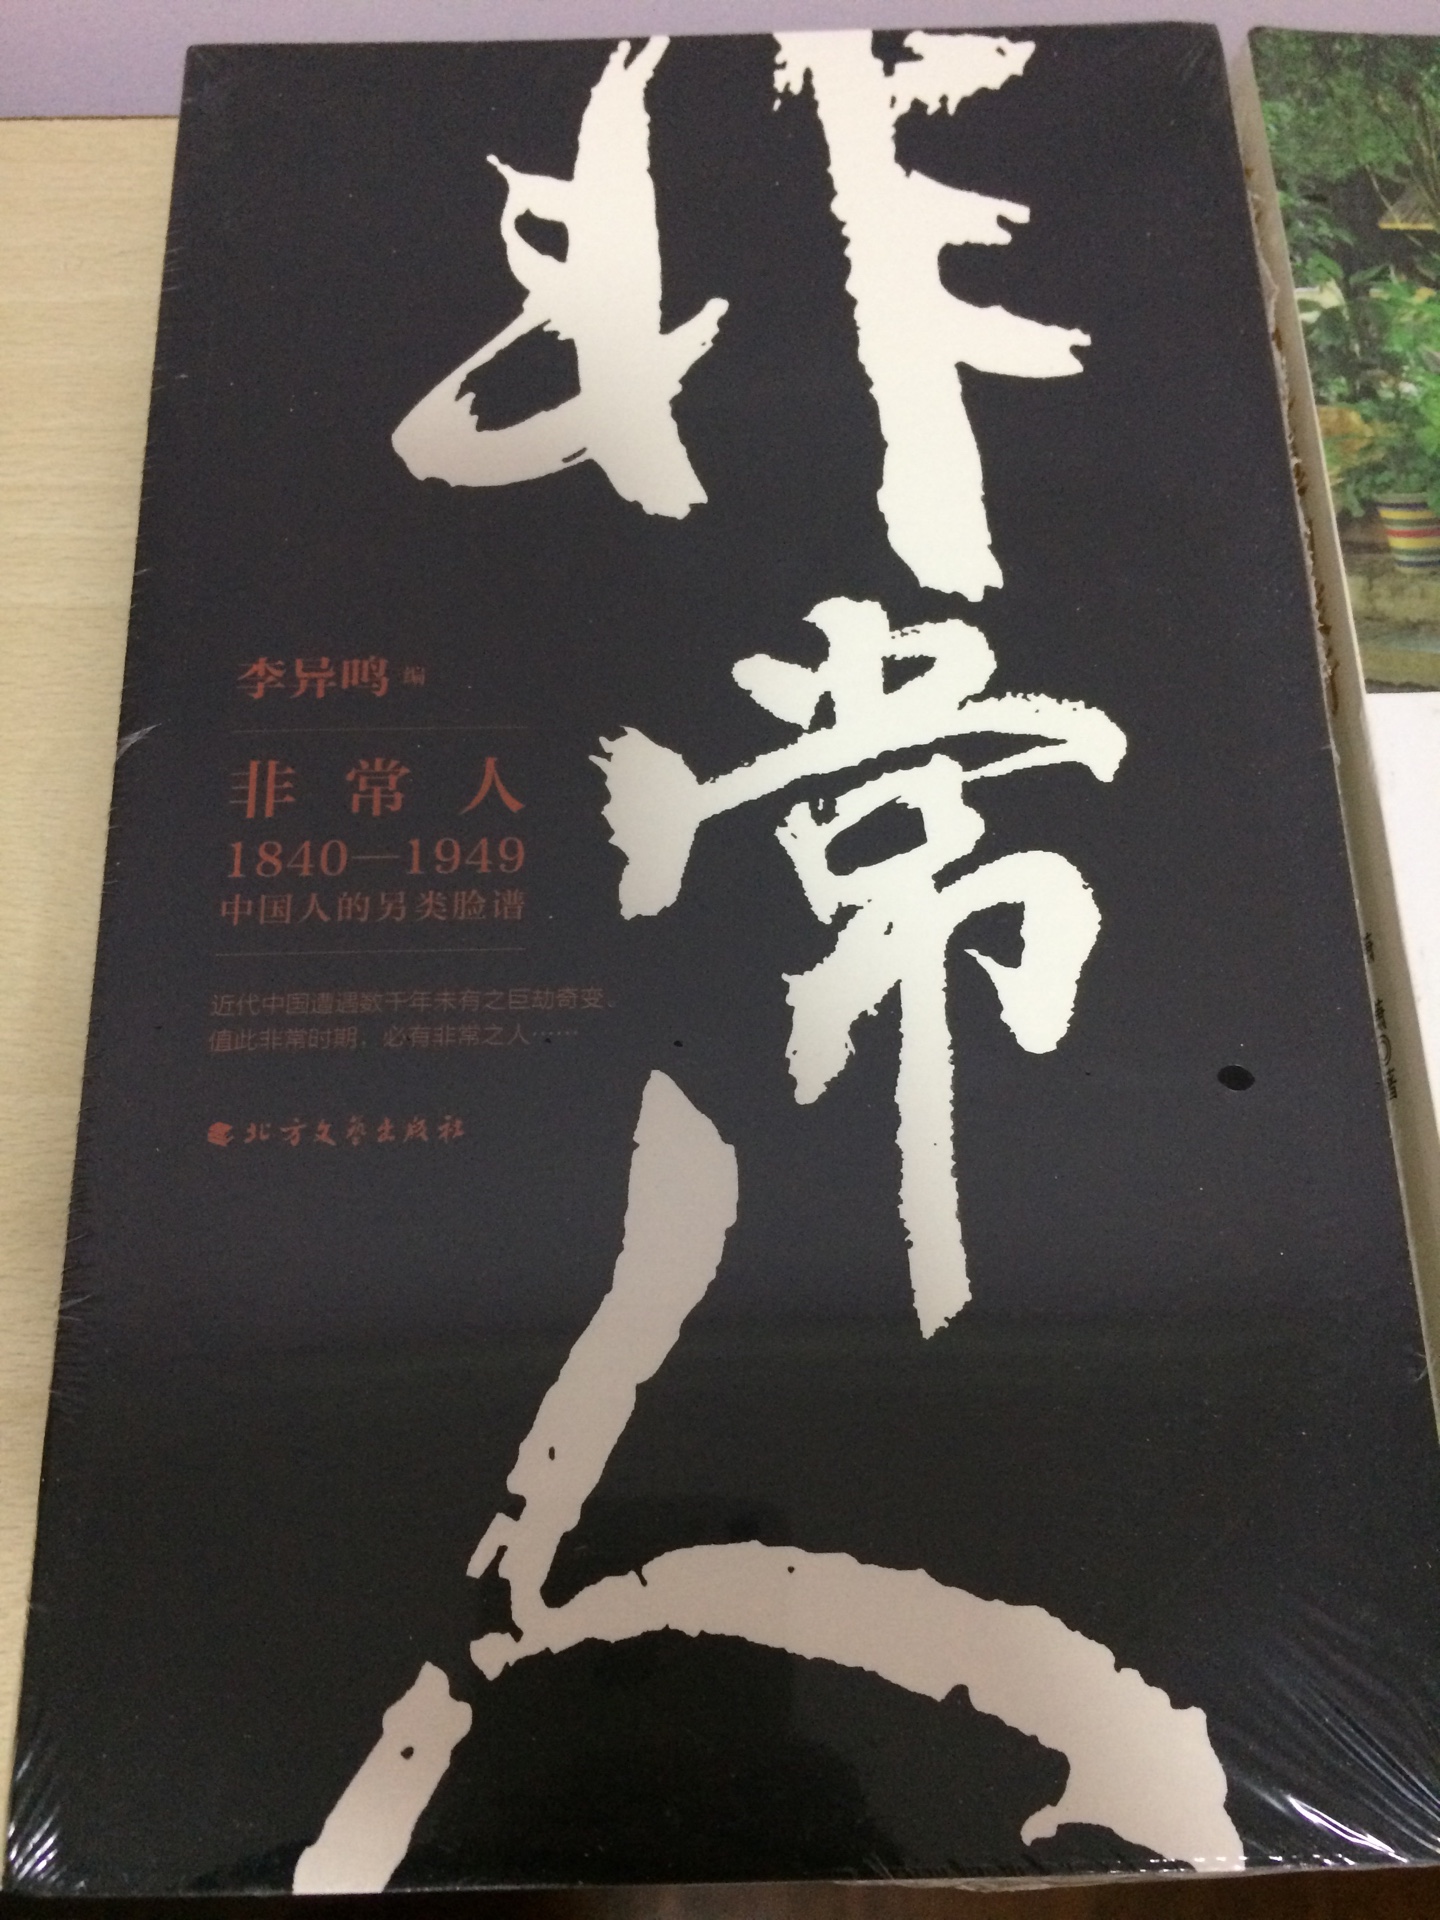 这套书有三本，讲述1840-1949年的中国历史，分为非常人、非常言和非常事，值得阅读。